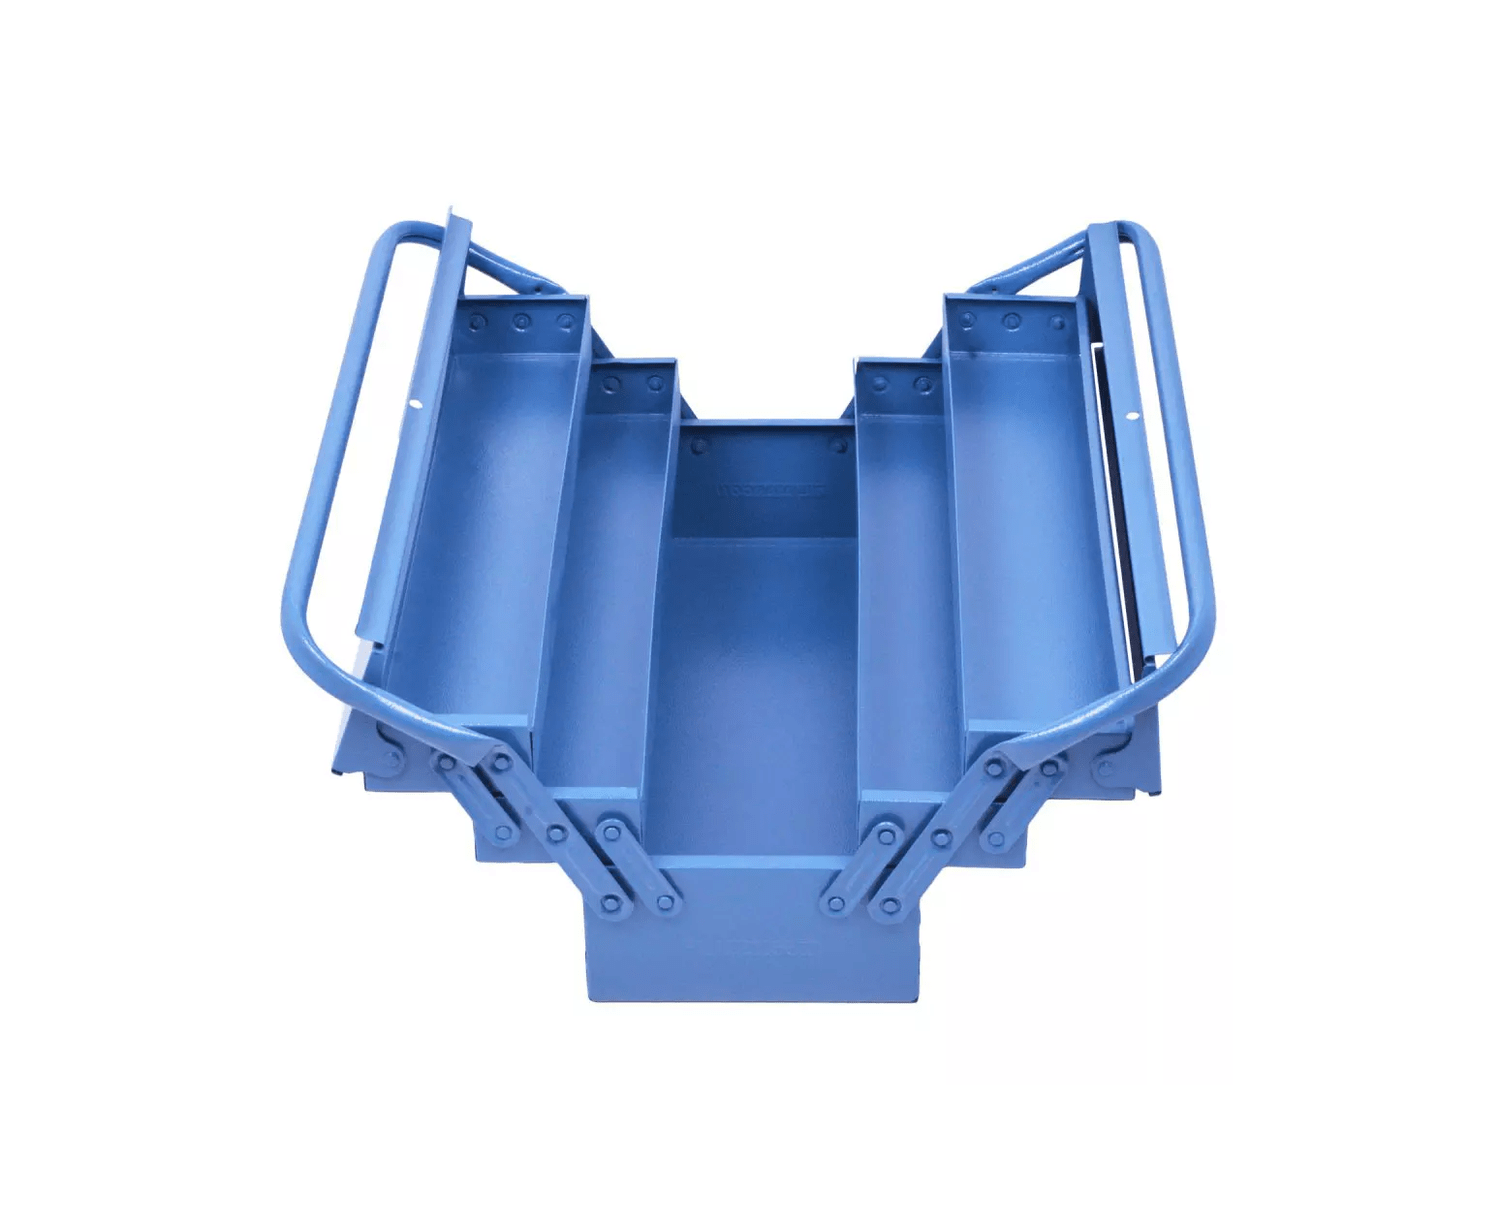 Compre Caixa para Ferramentas 5 gavetas 50cm Reforçada Azul FERCAR com  preço baixo em nossa loja online - Fermaquinas - B2C